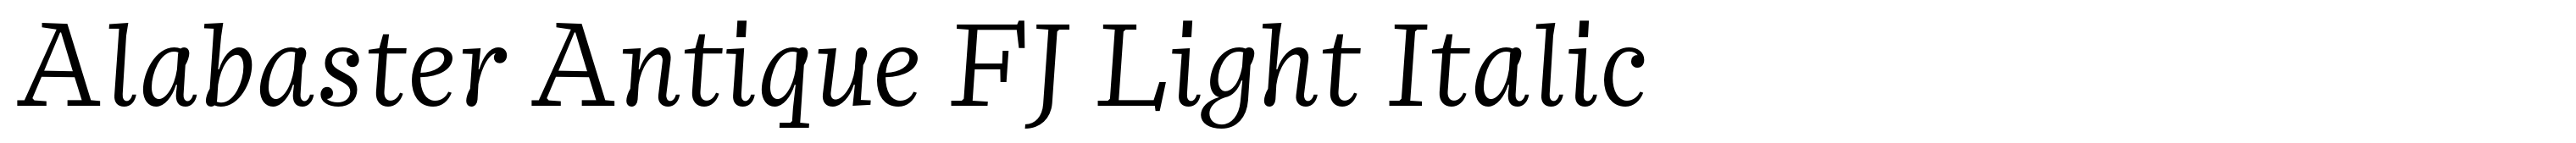 Alabaster Antique FJ Light Italic